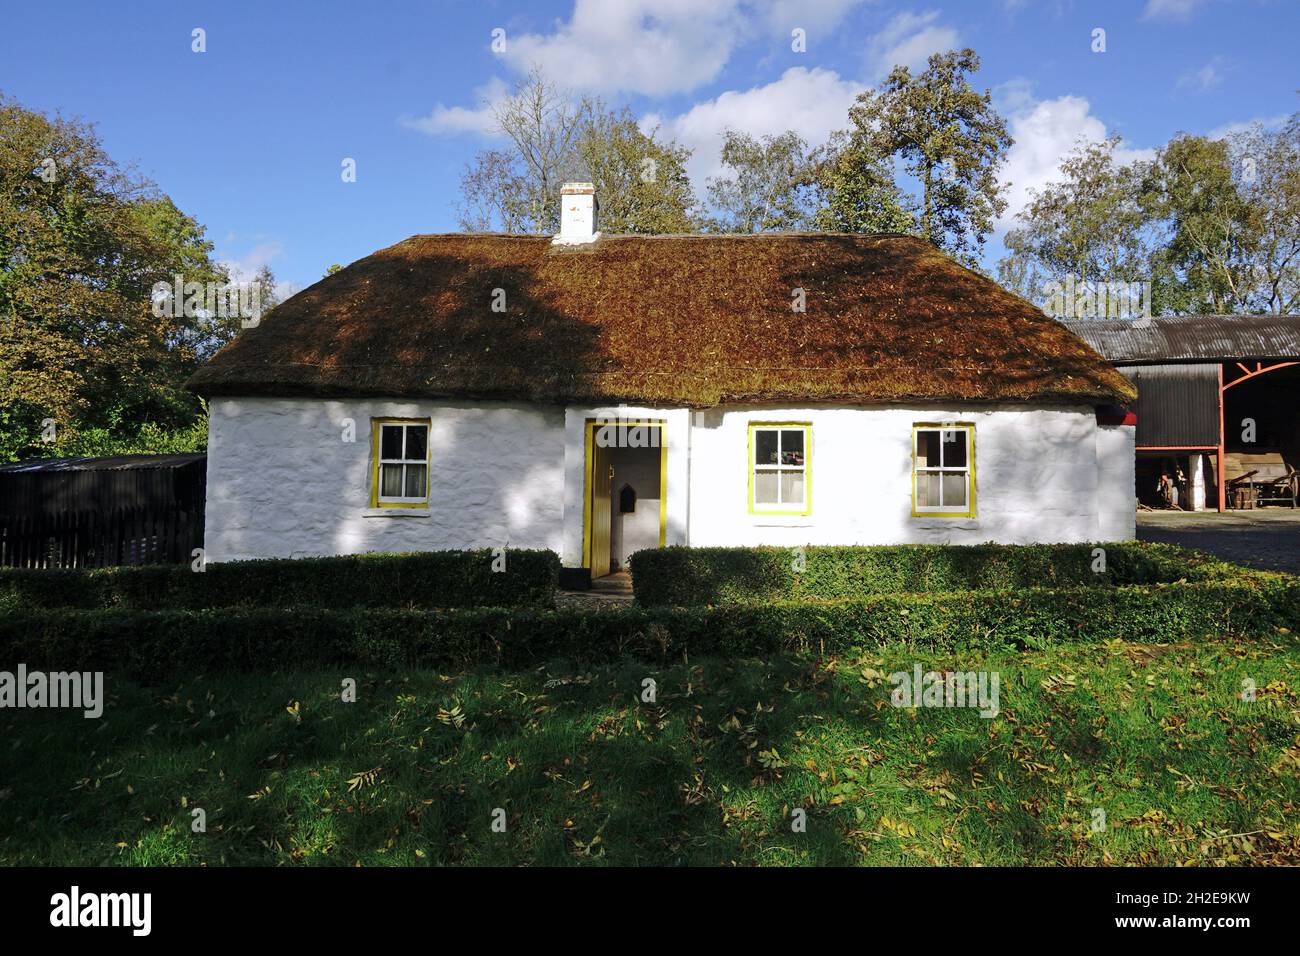 Maison de campagne en toit de chaume dans le Musée folklorique d'Ulster.Cultra, Irlande du Nord 16.10.2019 Banque D'Images